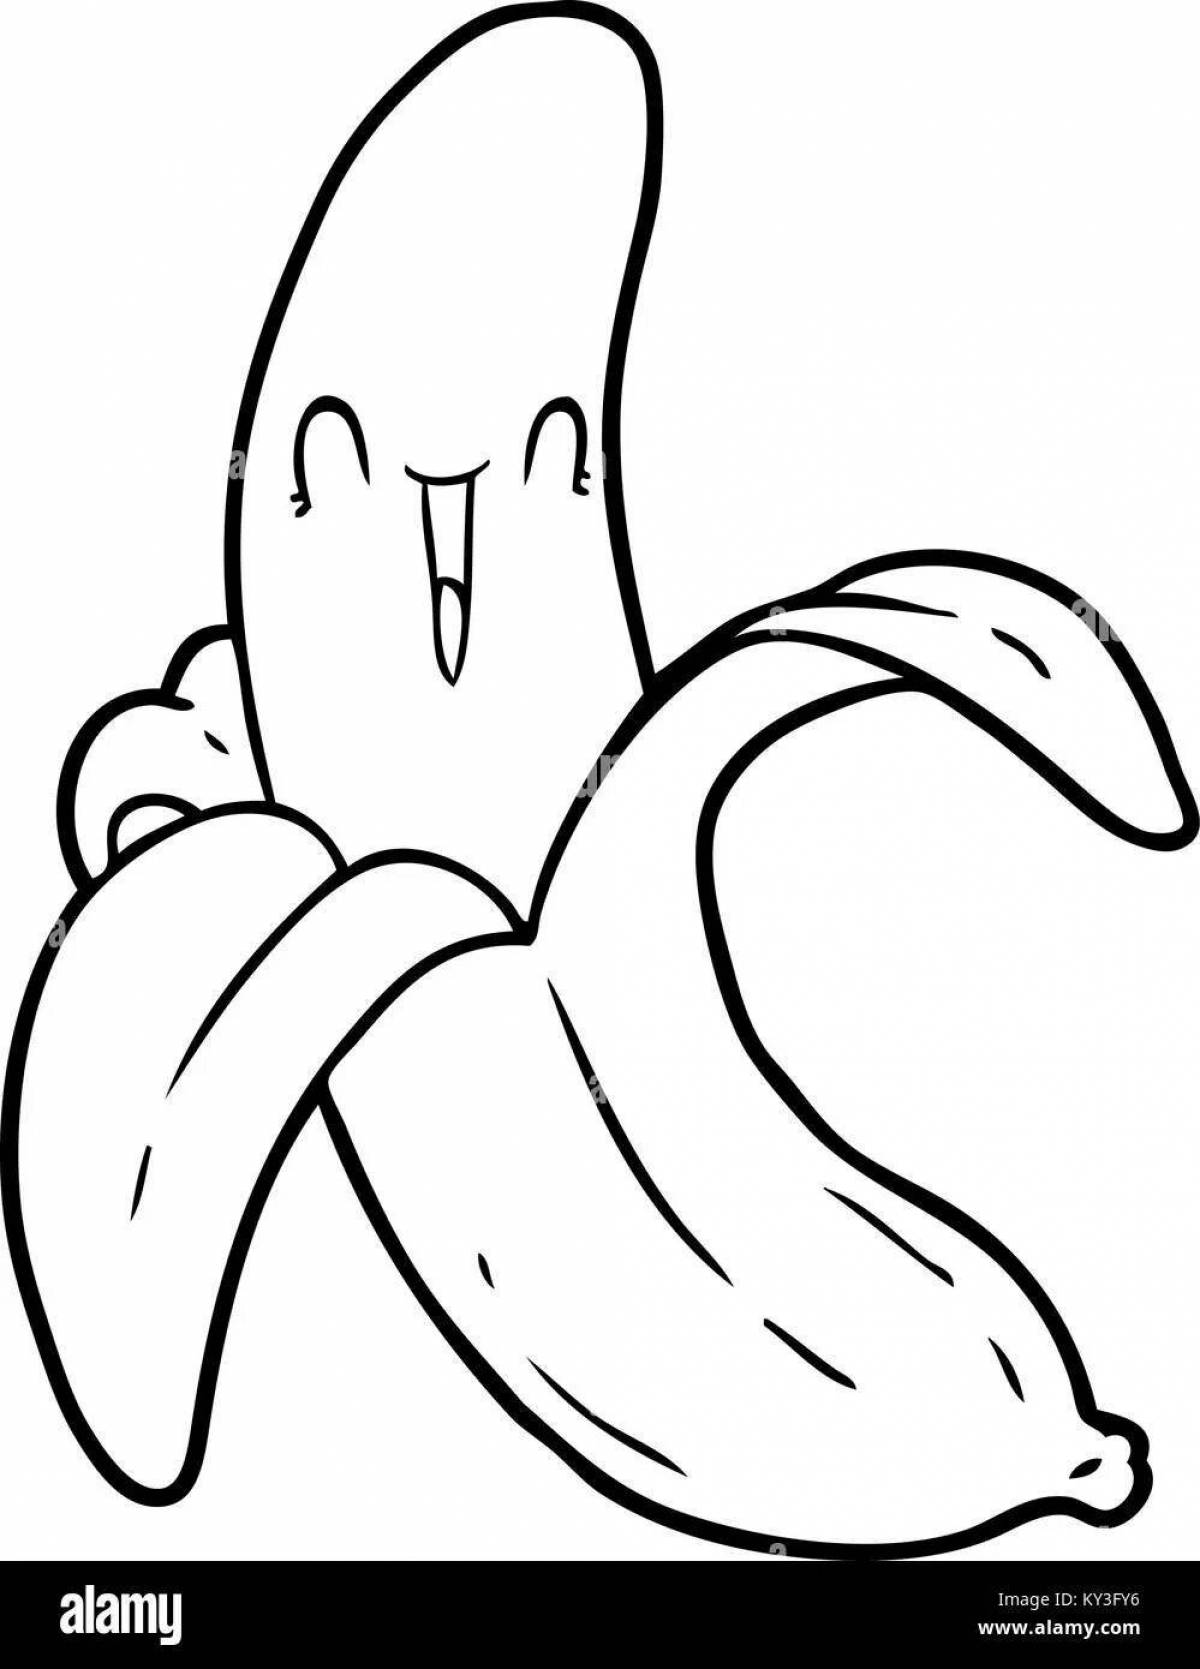 Раскраска милые бананчики